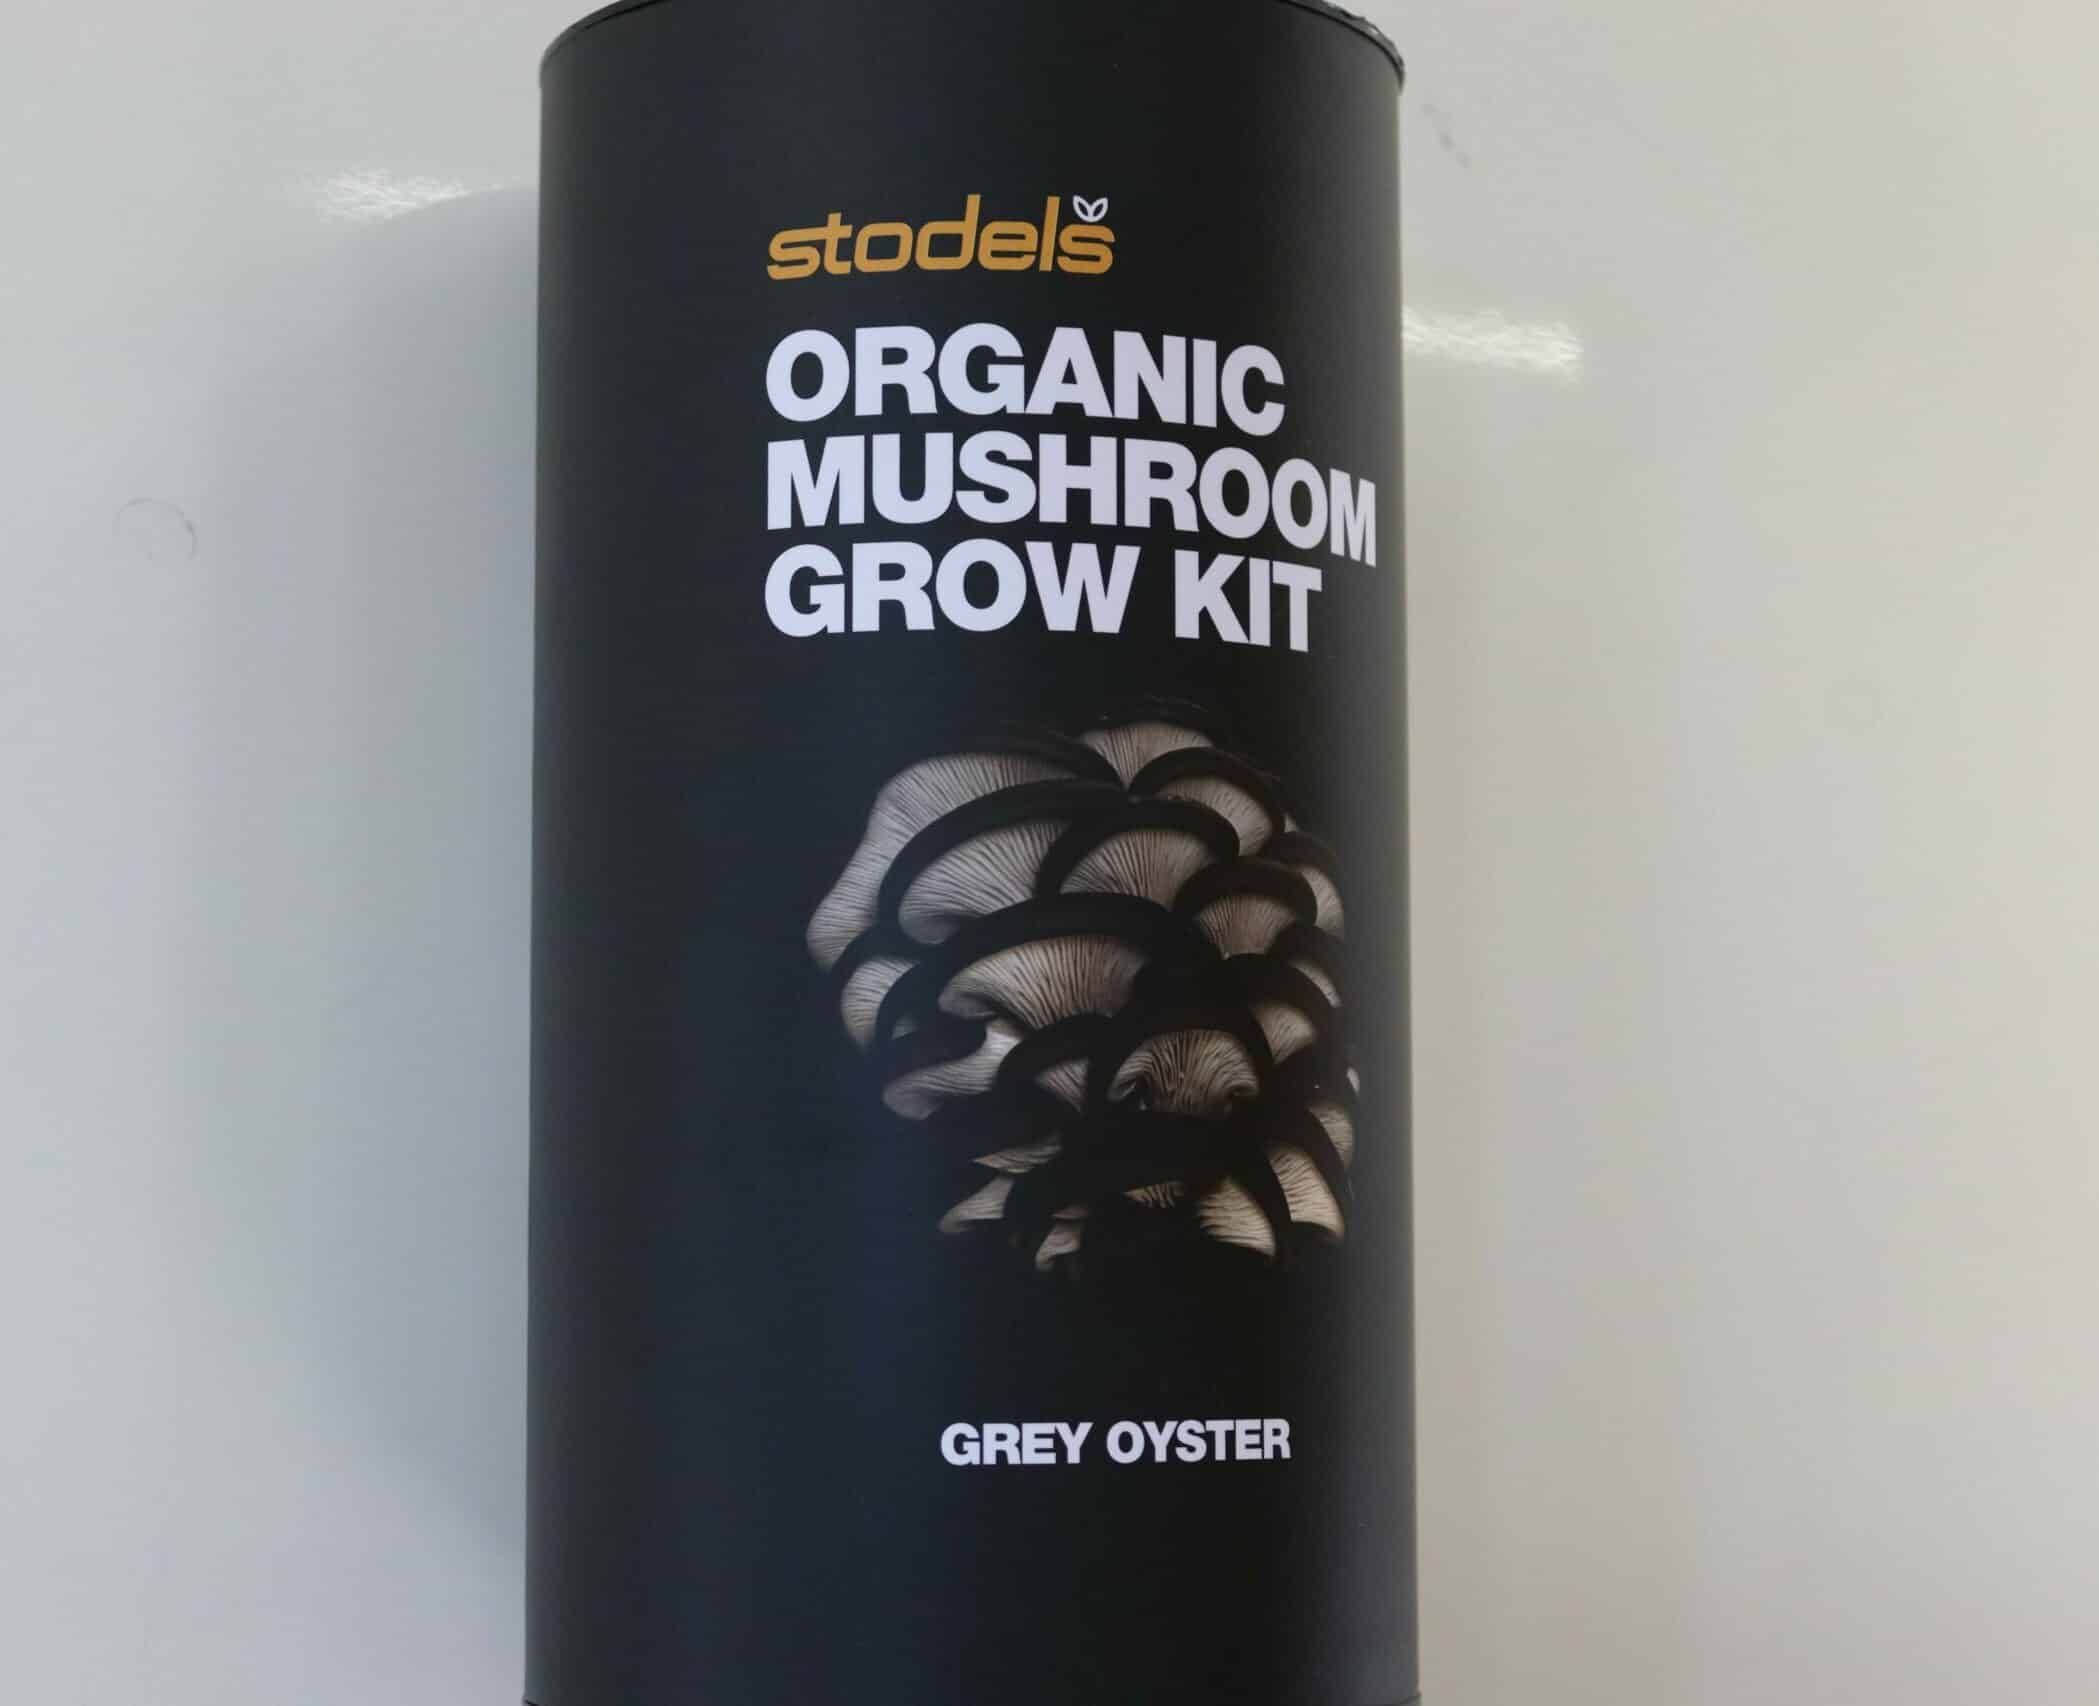 Stodels organic mushroom grow kit for grey oyster in a black tube